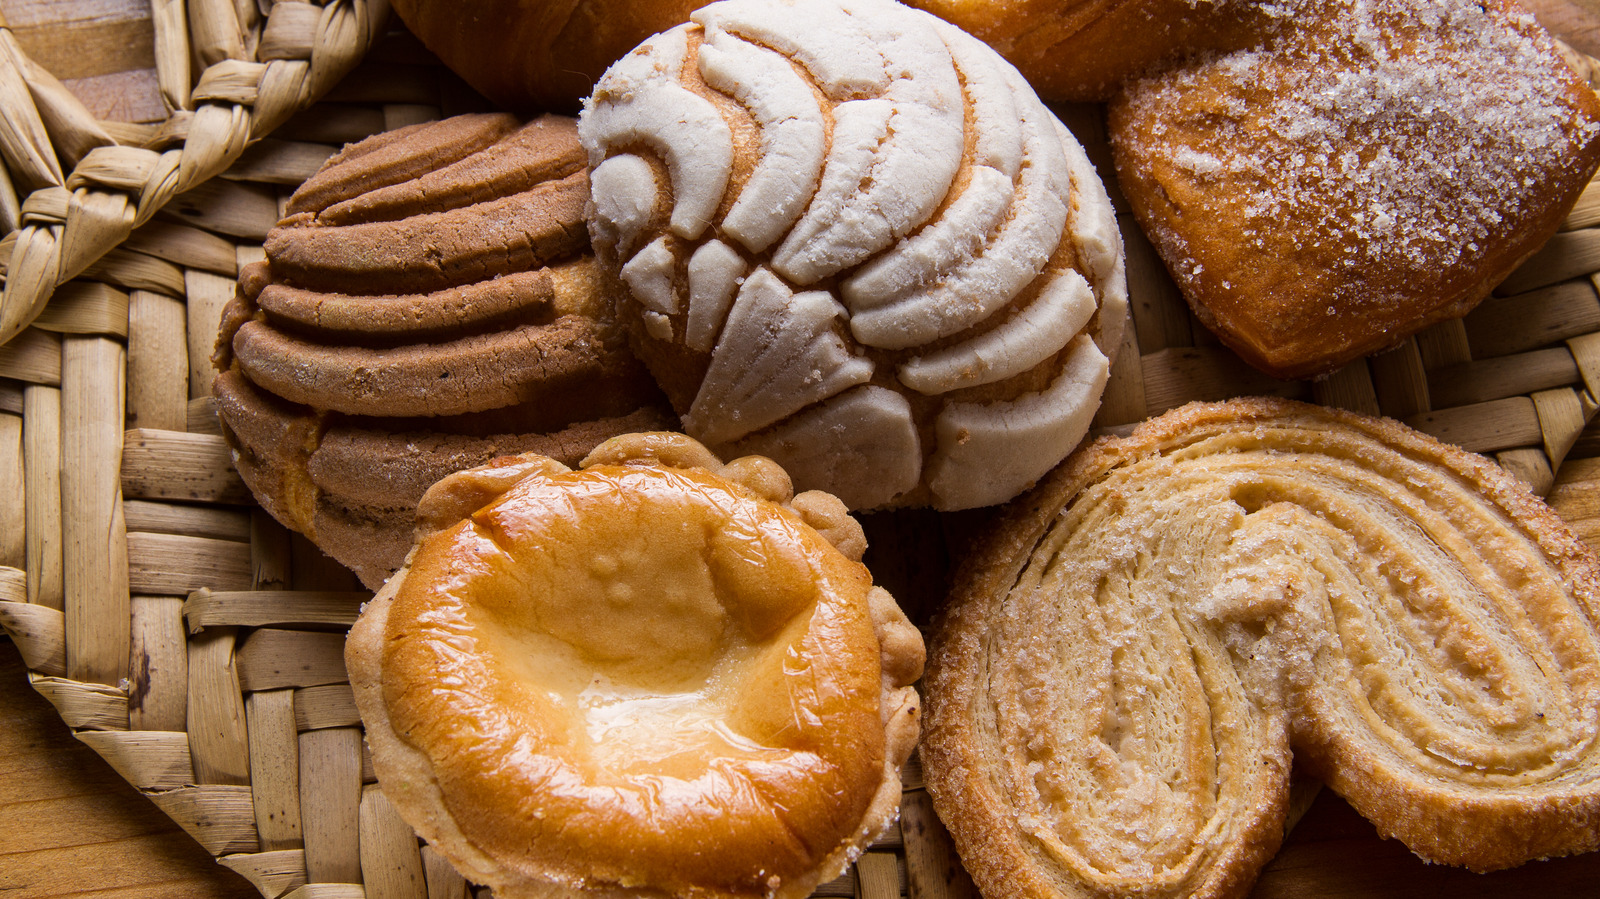 18 Best Bakeries In Texas